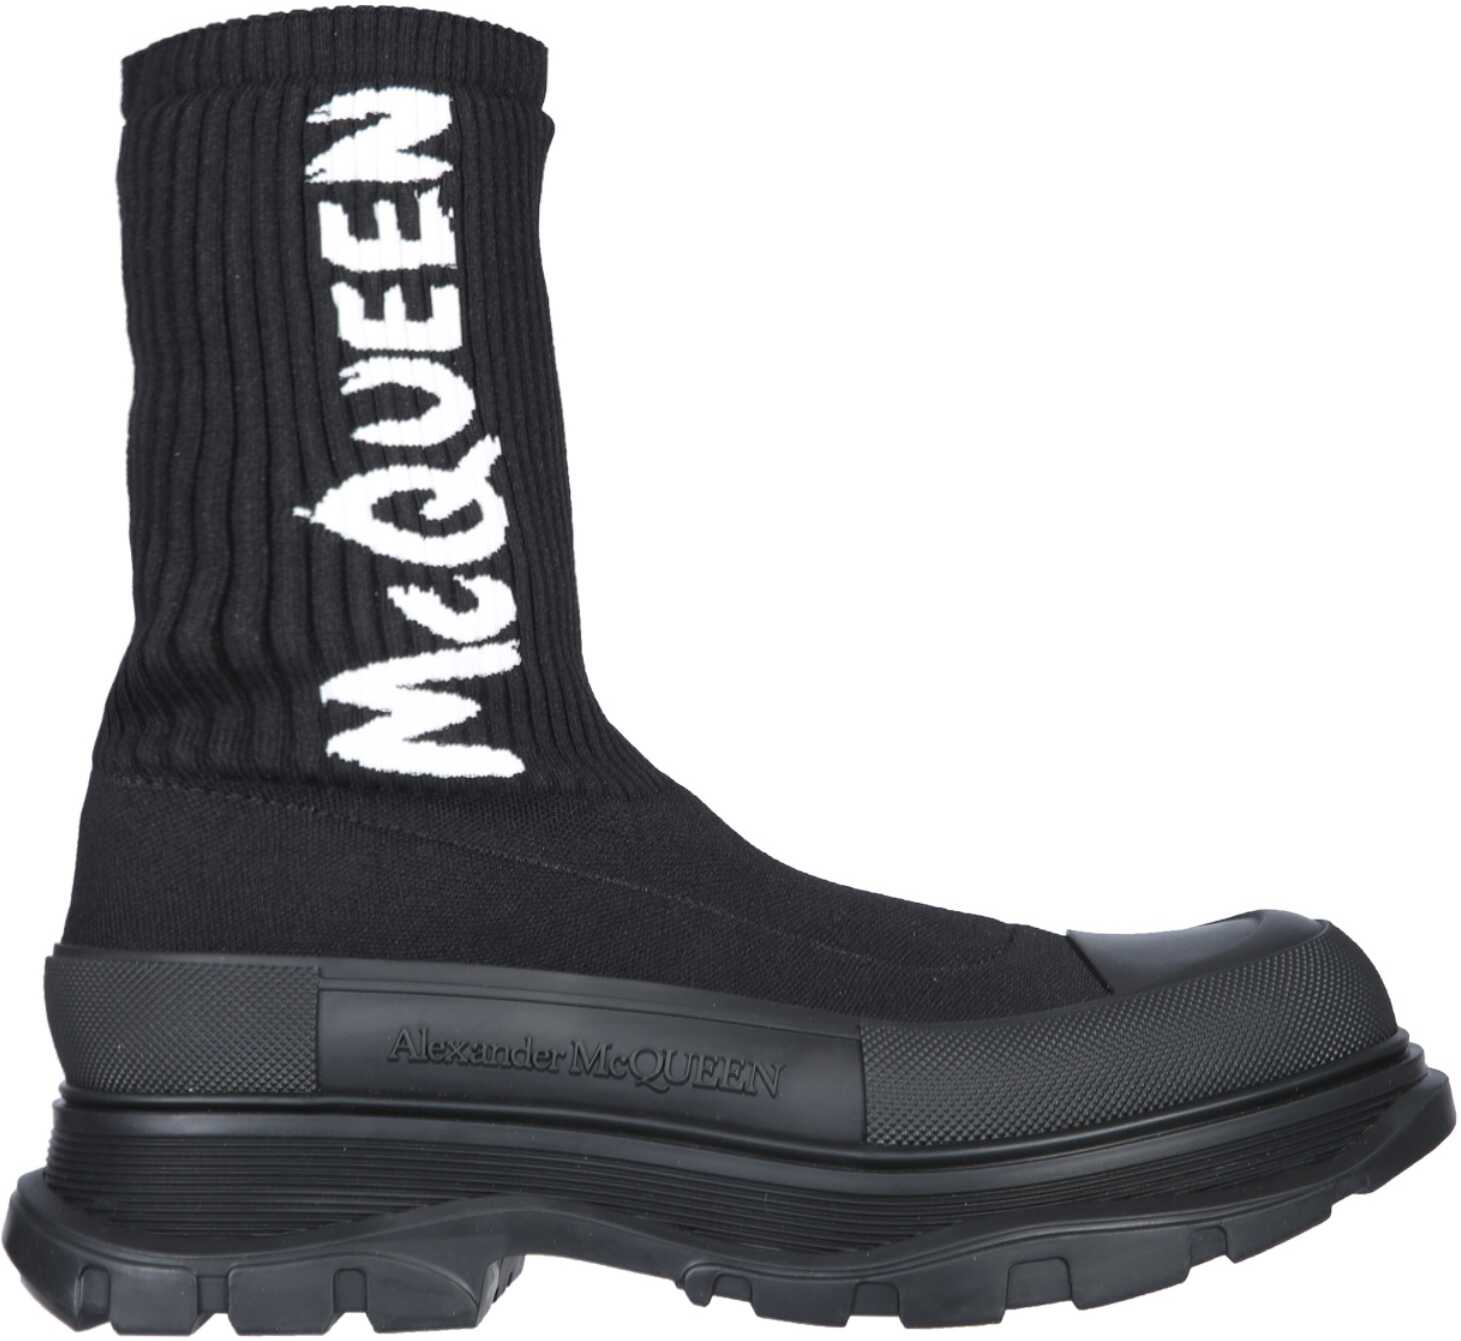 Alexander McQueen Tread Slick Boot BLACK Alexander McQueen